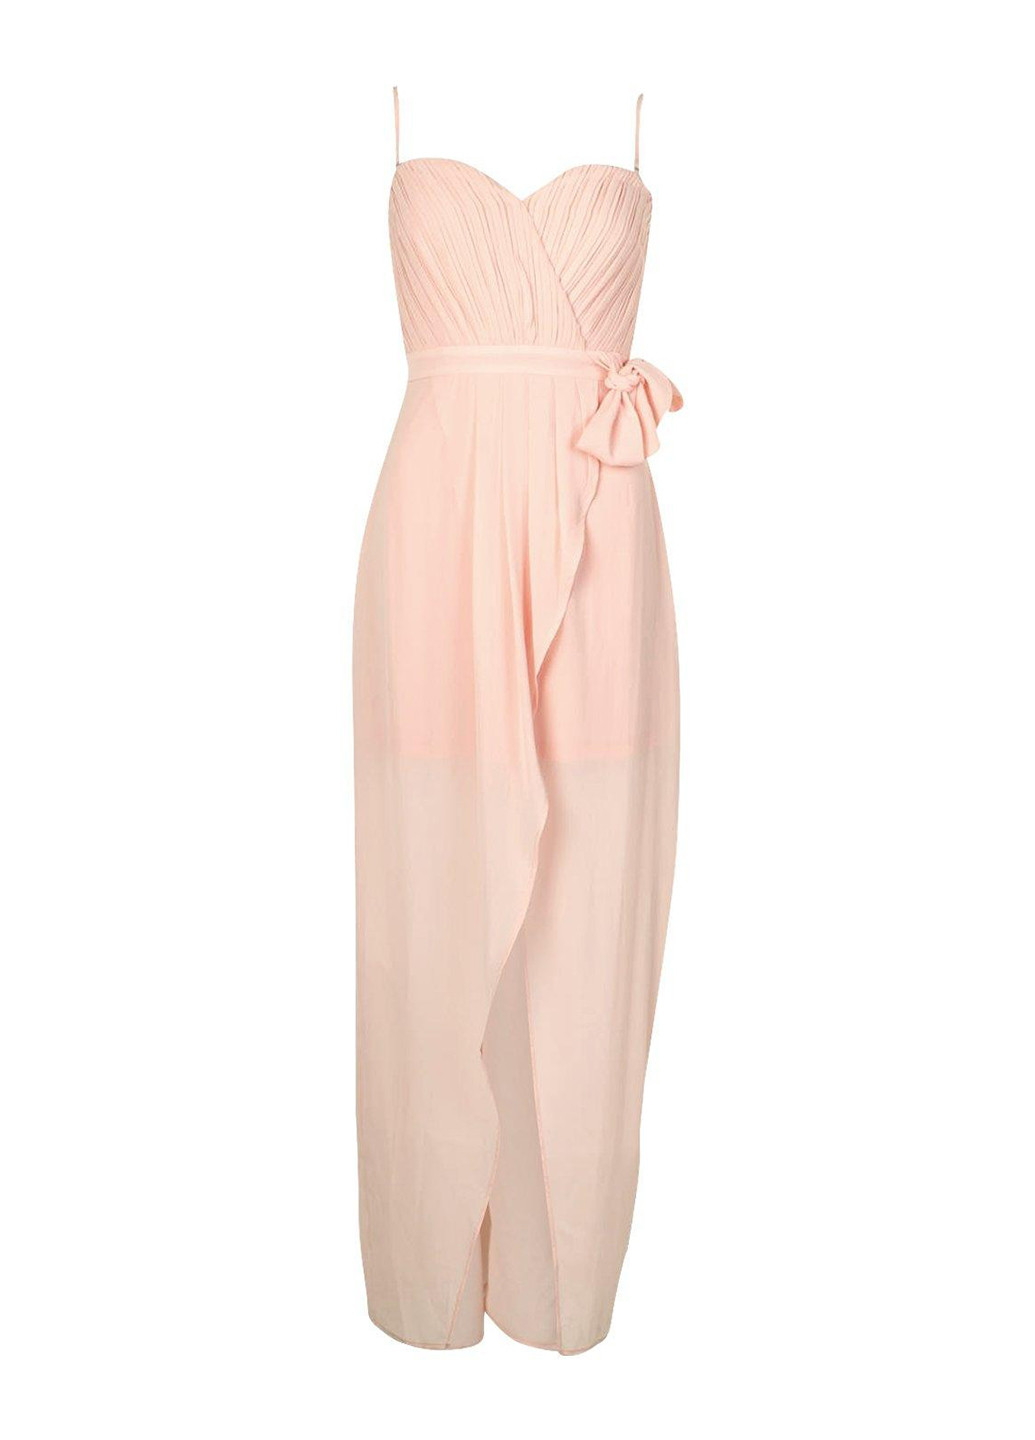 Світло-рожева вечірня сукня на запах, в грецькому стилі Boohoo однотонна